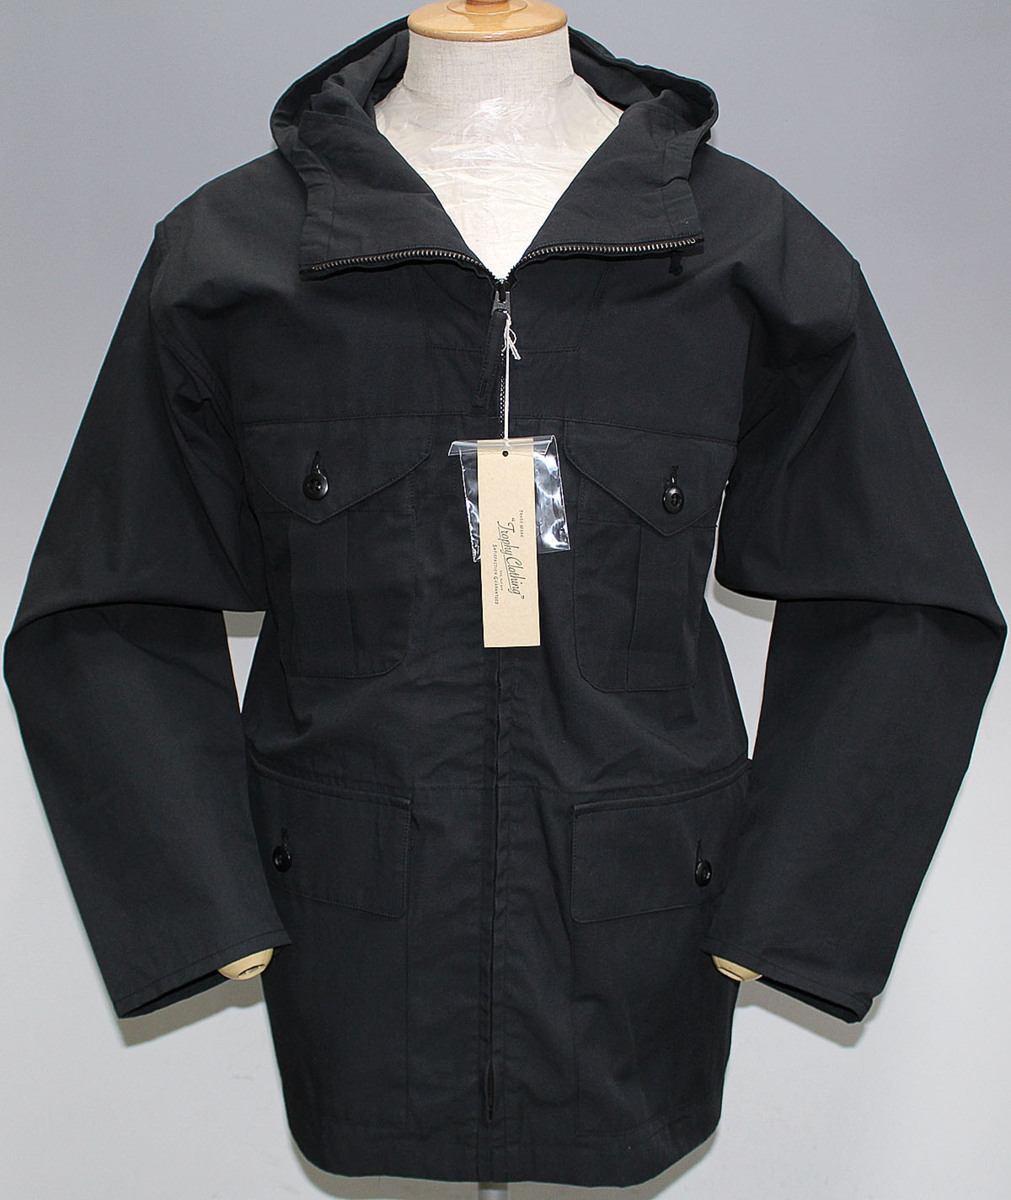 TROPHY CLOTHING トロフィークロージング フィールドフードジャケット TR19SS-503 新品未使用 ブラック size 40 / マウンテンパーカー